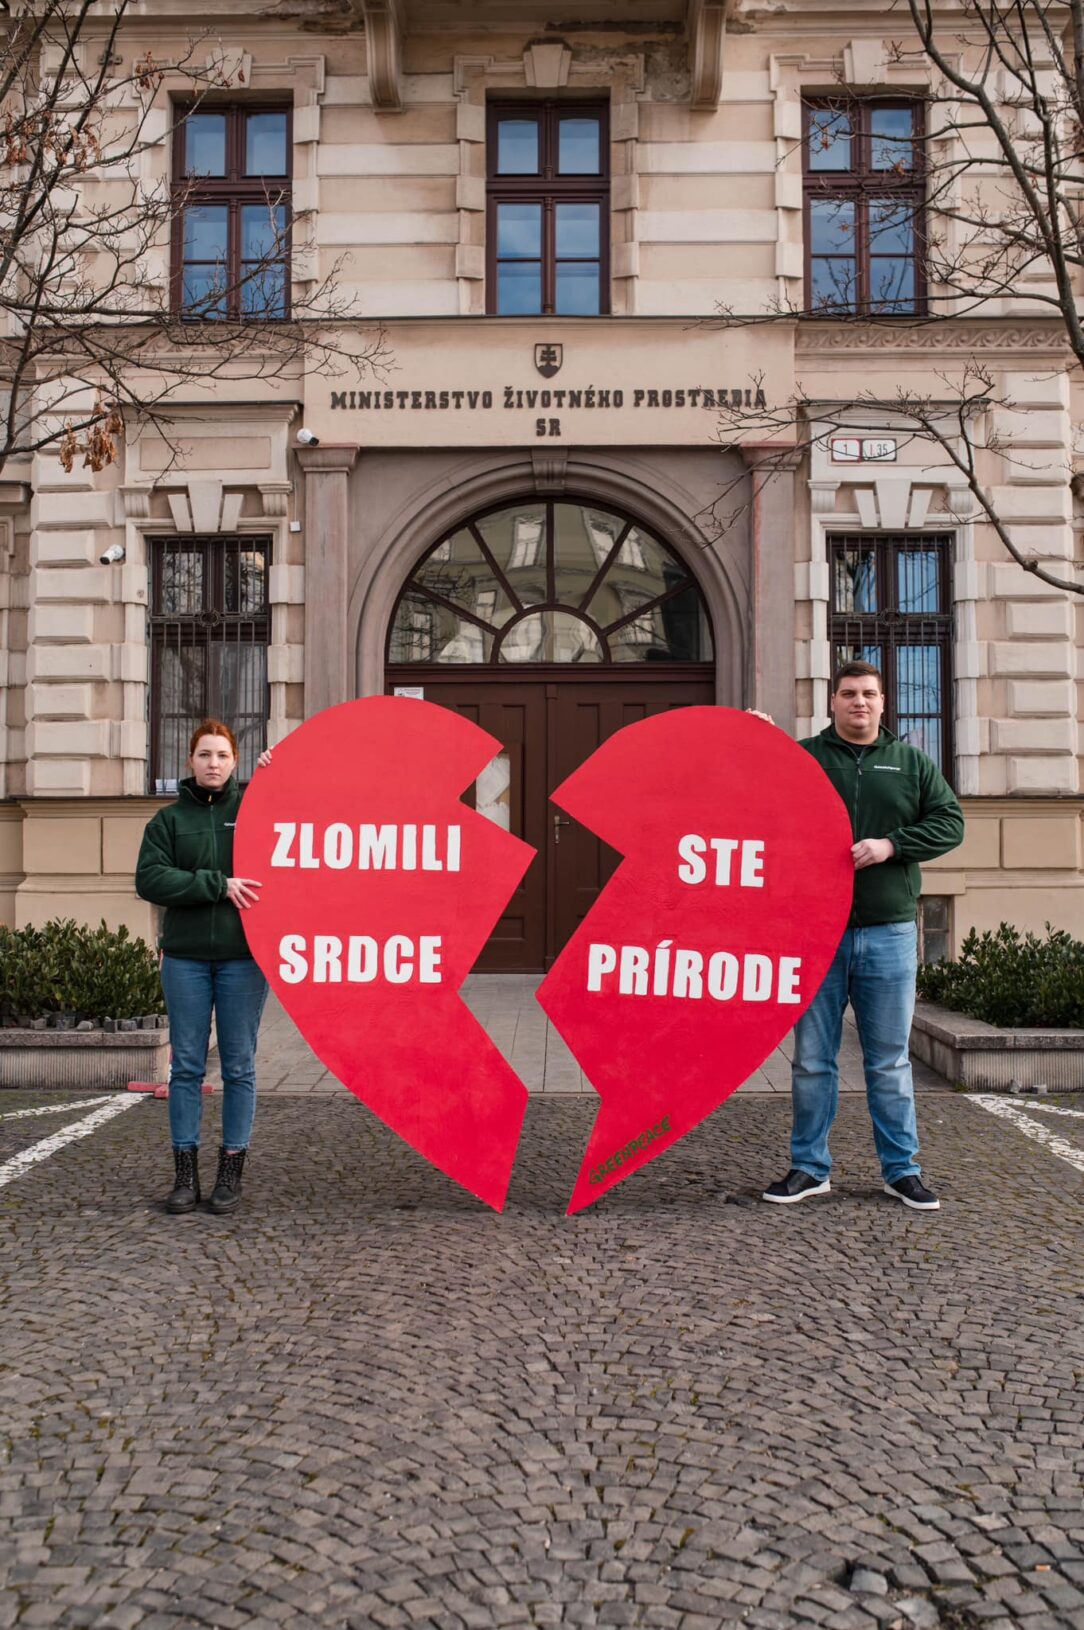 Greenpeace Slovensko